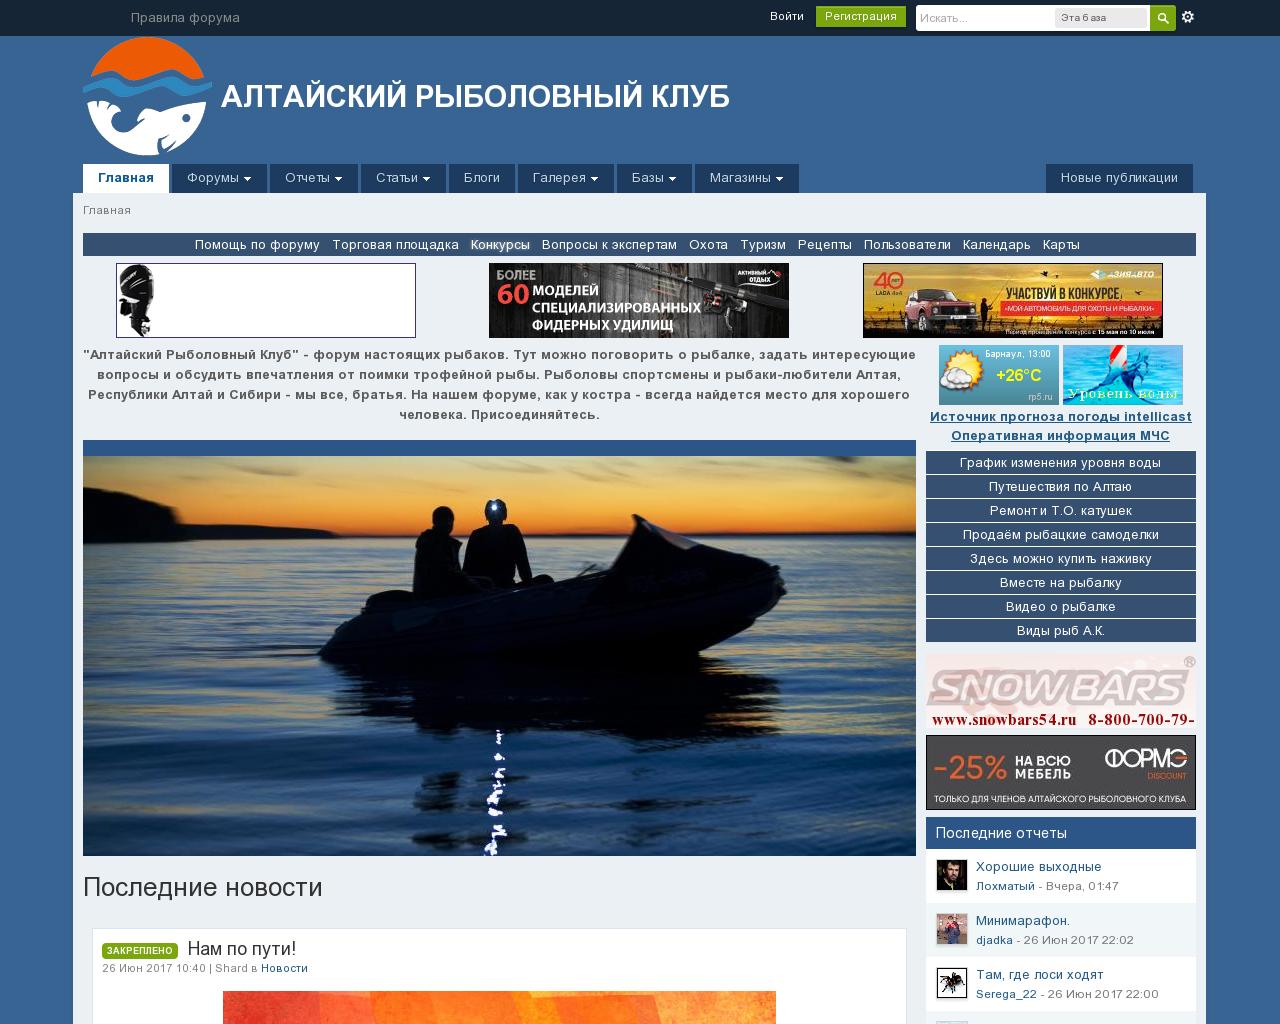 Изображение сайта altfishing-club.ru в разрешении 1280x1024